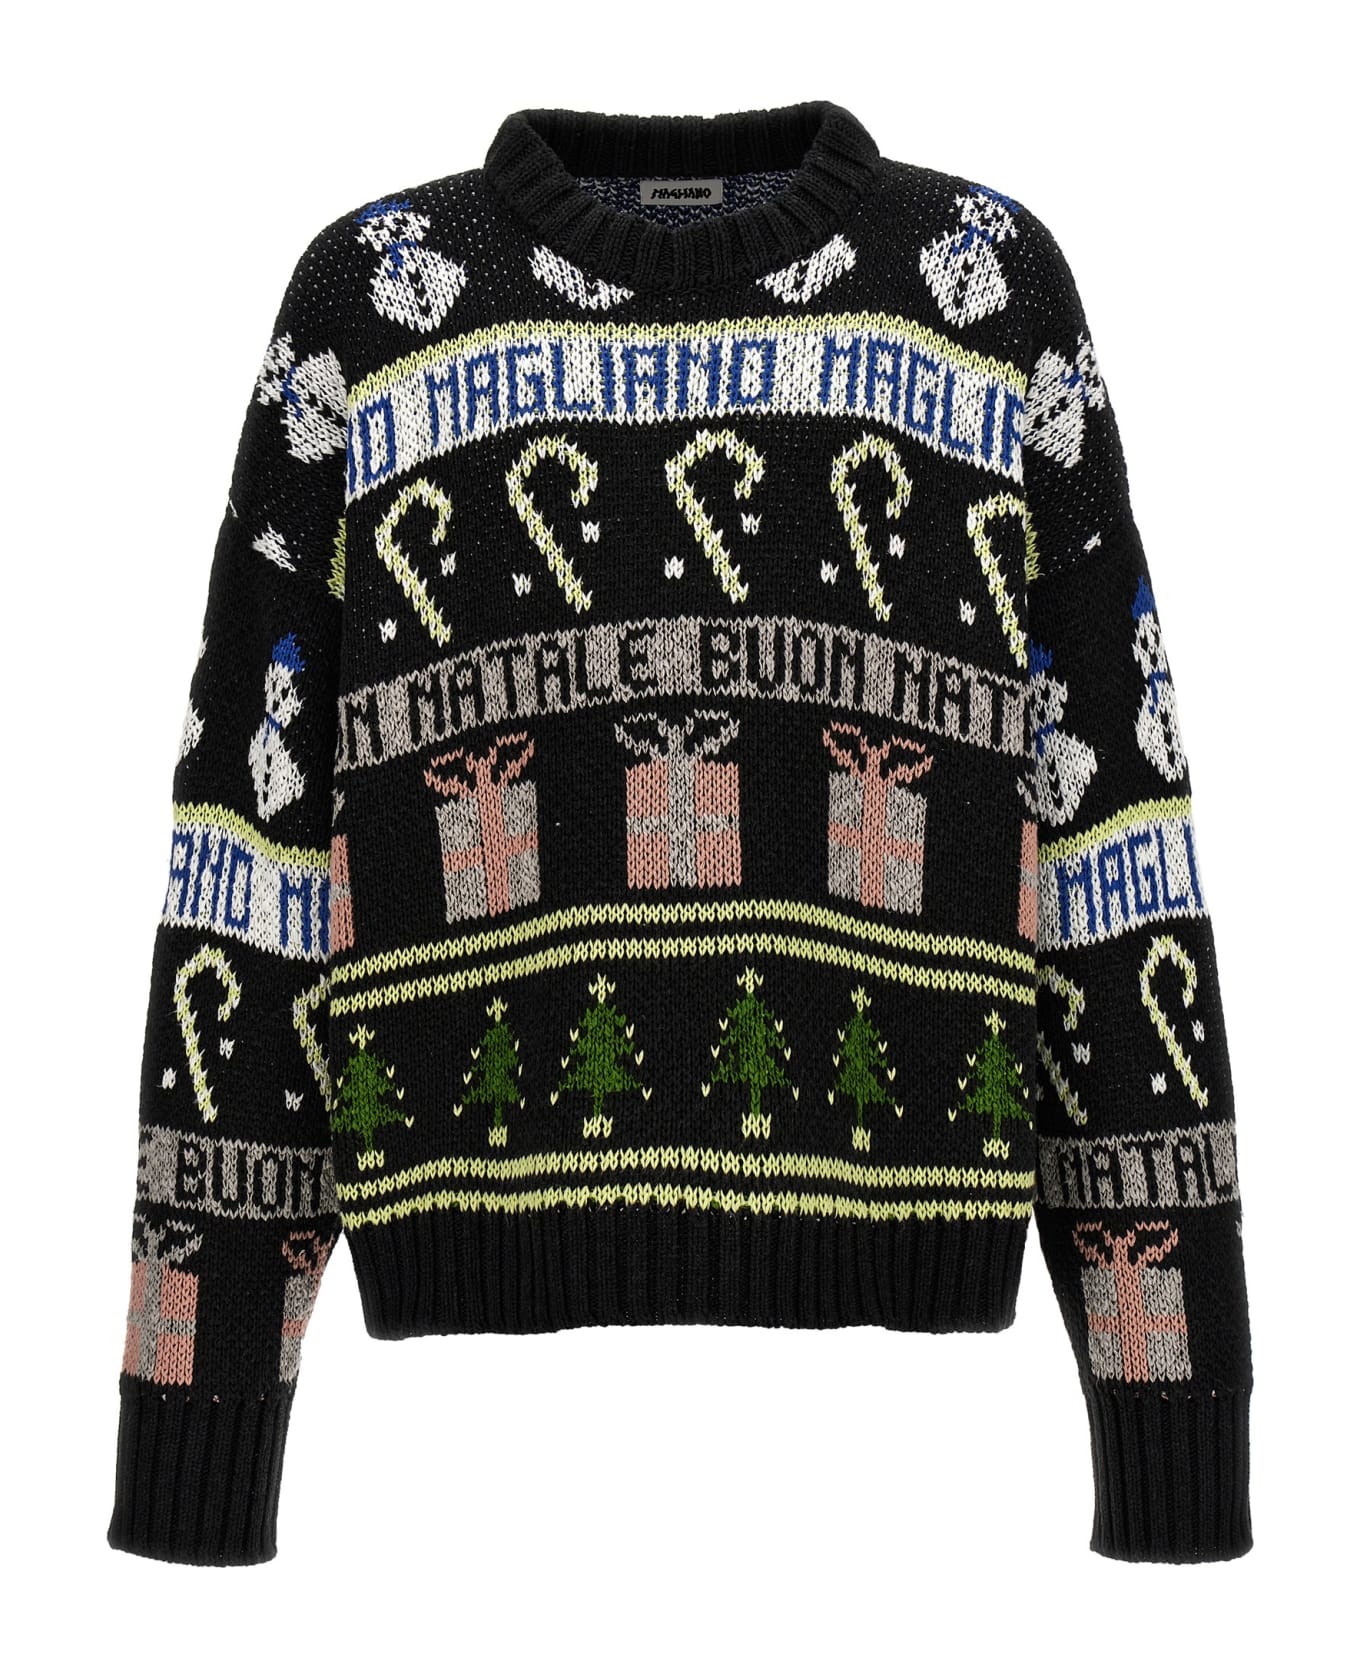 Magliano 'buone Feste' Sweater - Black  